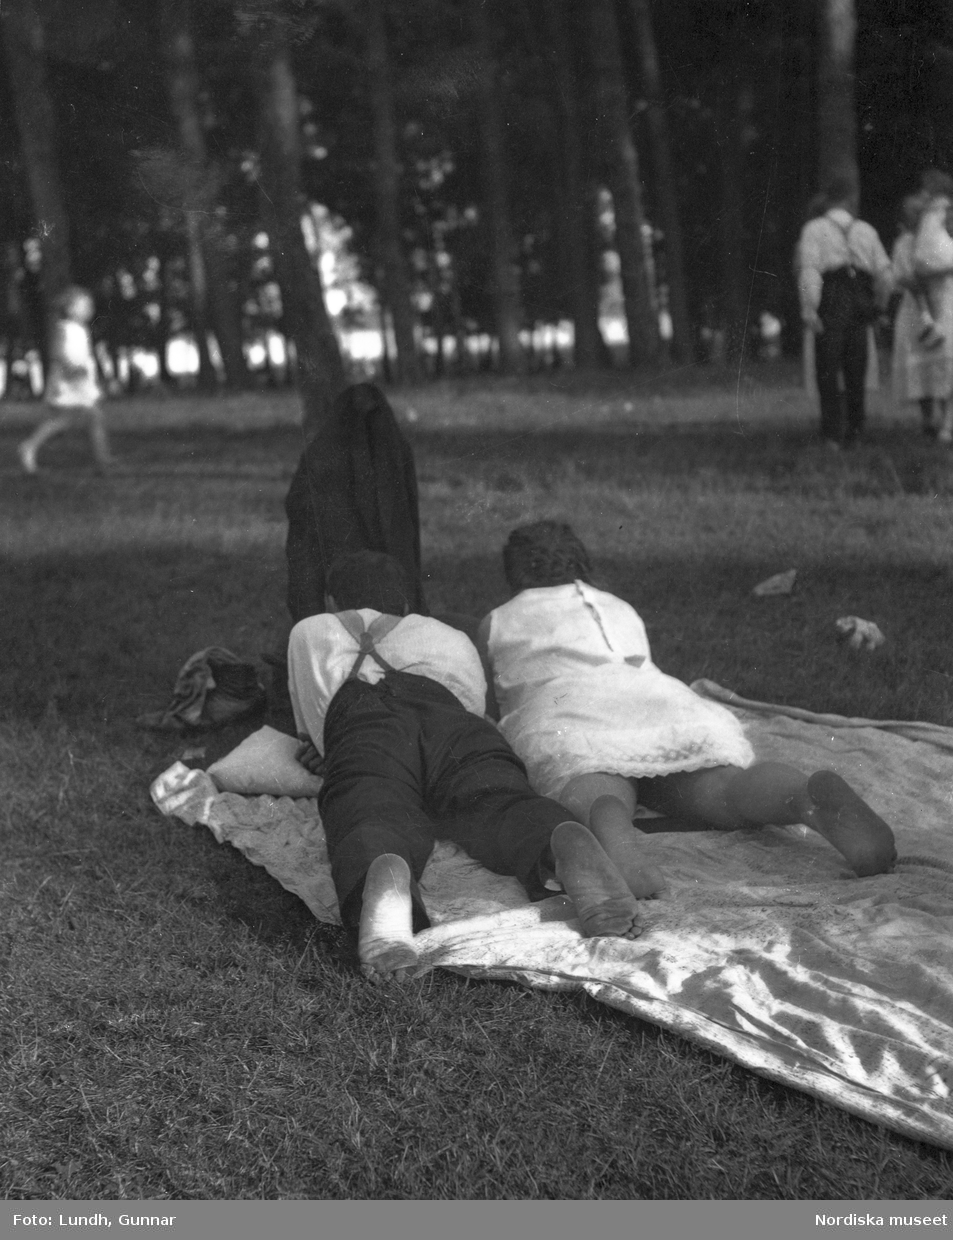 Motiv: Utlandet, Bad v. Berlin 147 - 156 ;
Vy över en badstrand med människor som sitter på marken och människor som badar , en man och en kvinna ligger på en filt i en park, anteckning på kontaktkarta 149 "Badande barn".